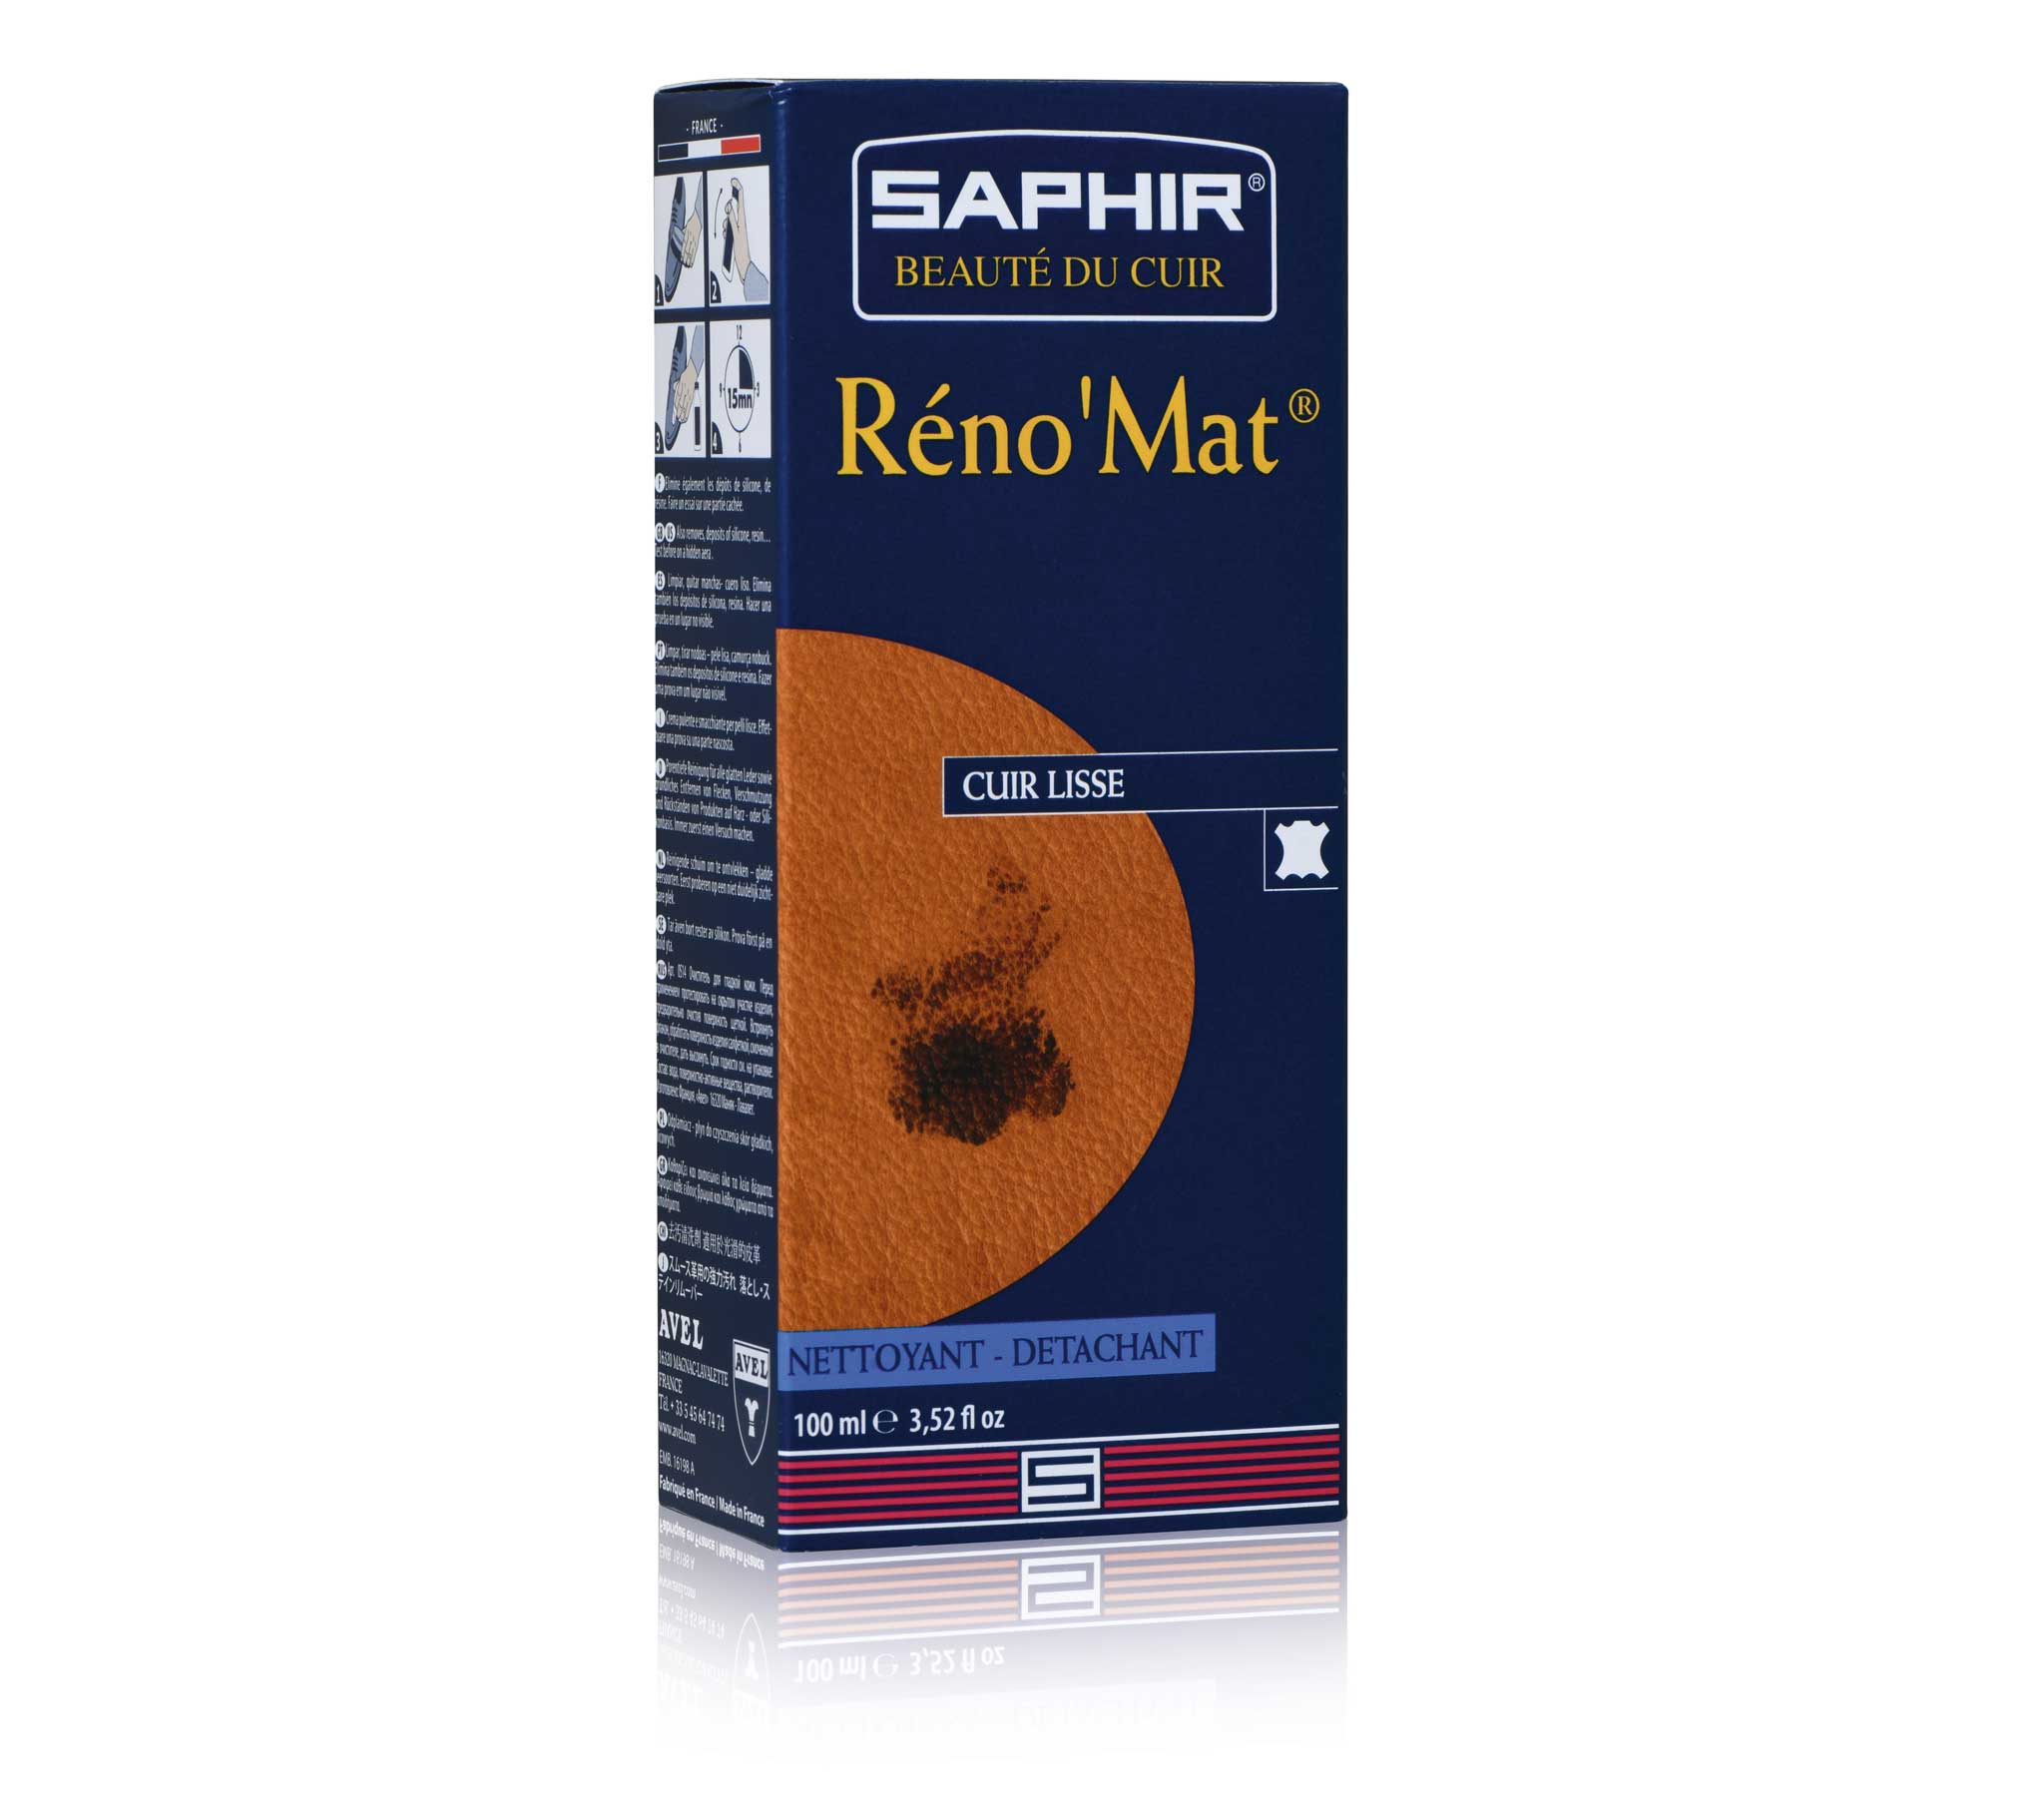 Saphir Beaute du Cuir - Réno'Mat